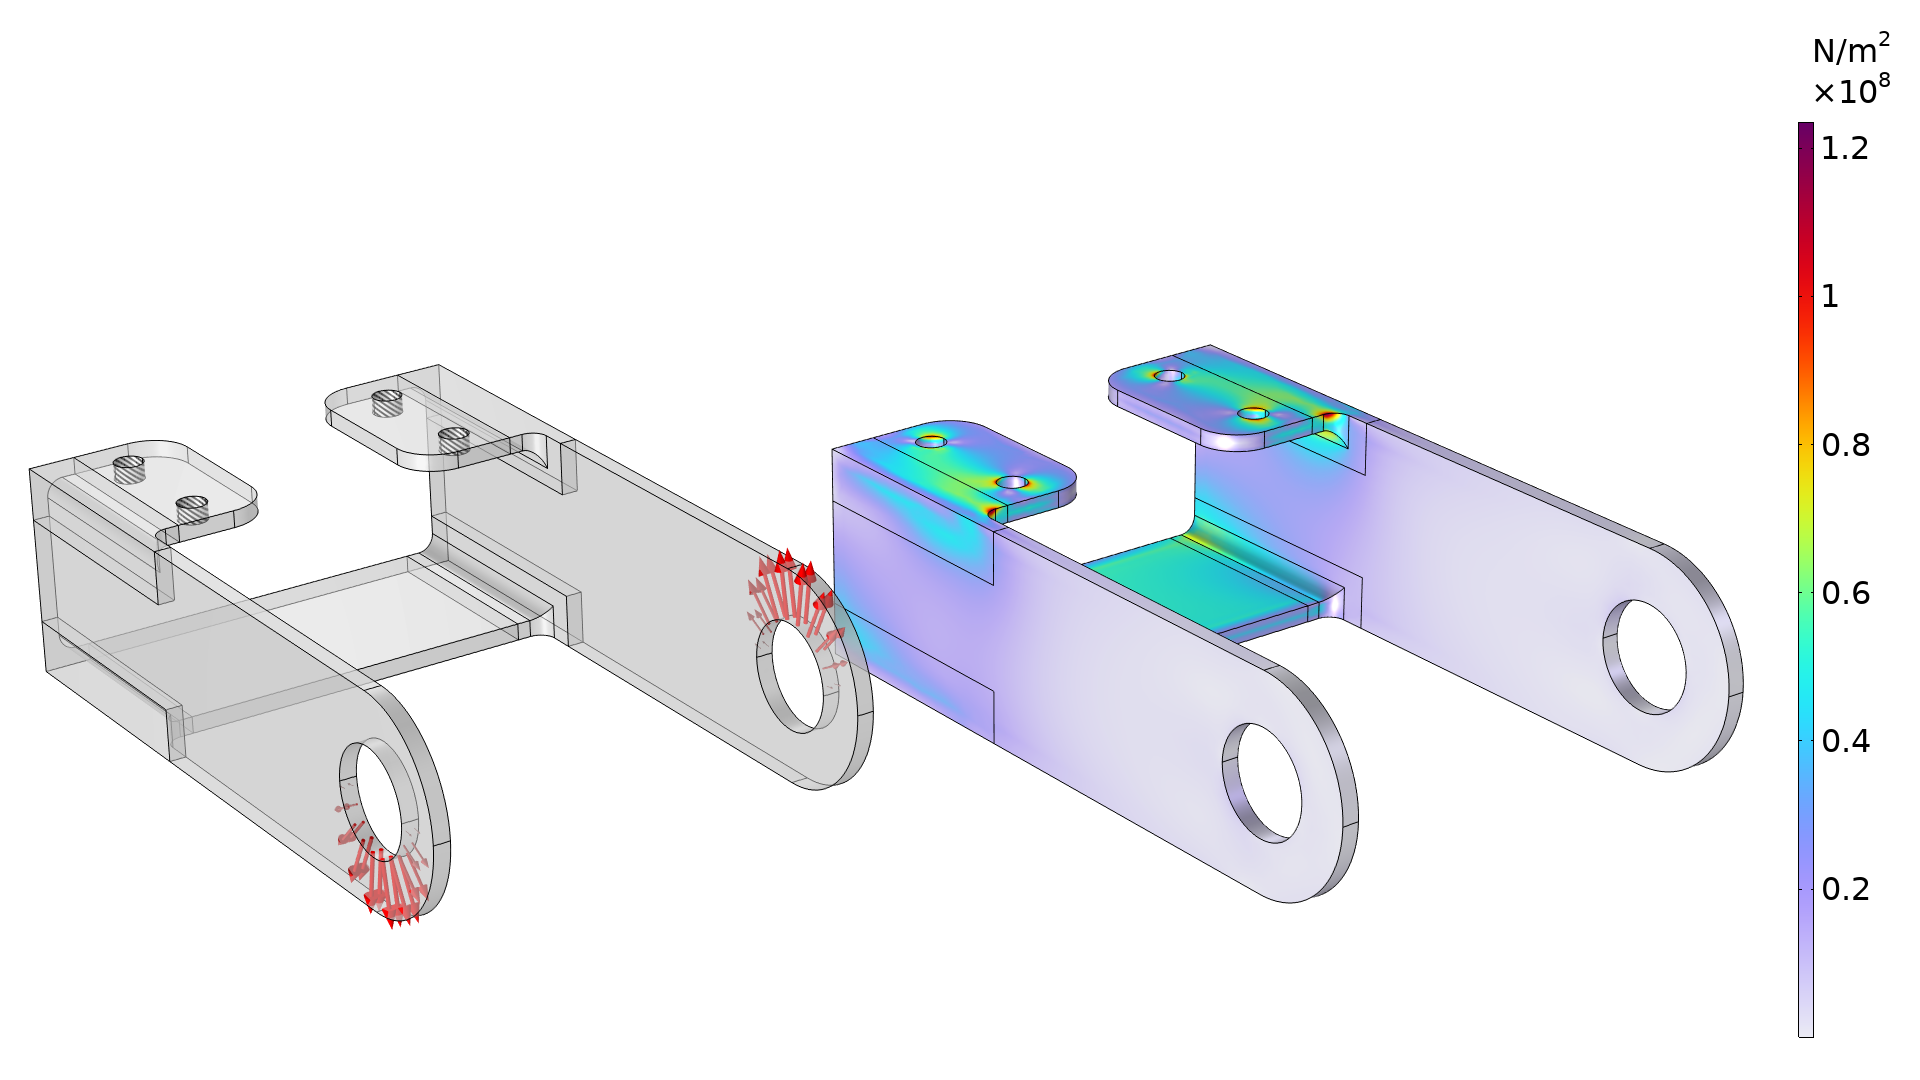 两幅支架模型图，左边显示边界条件，右边用彩虹色标尺显示了应力分布。